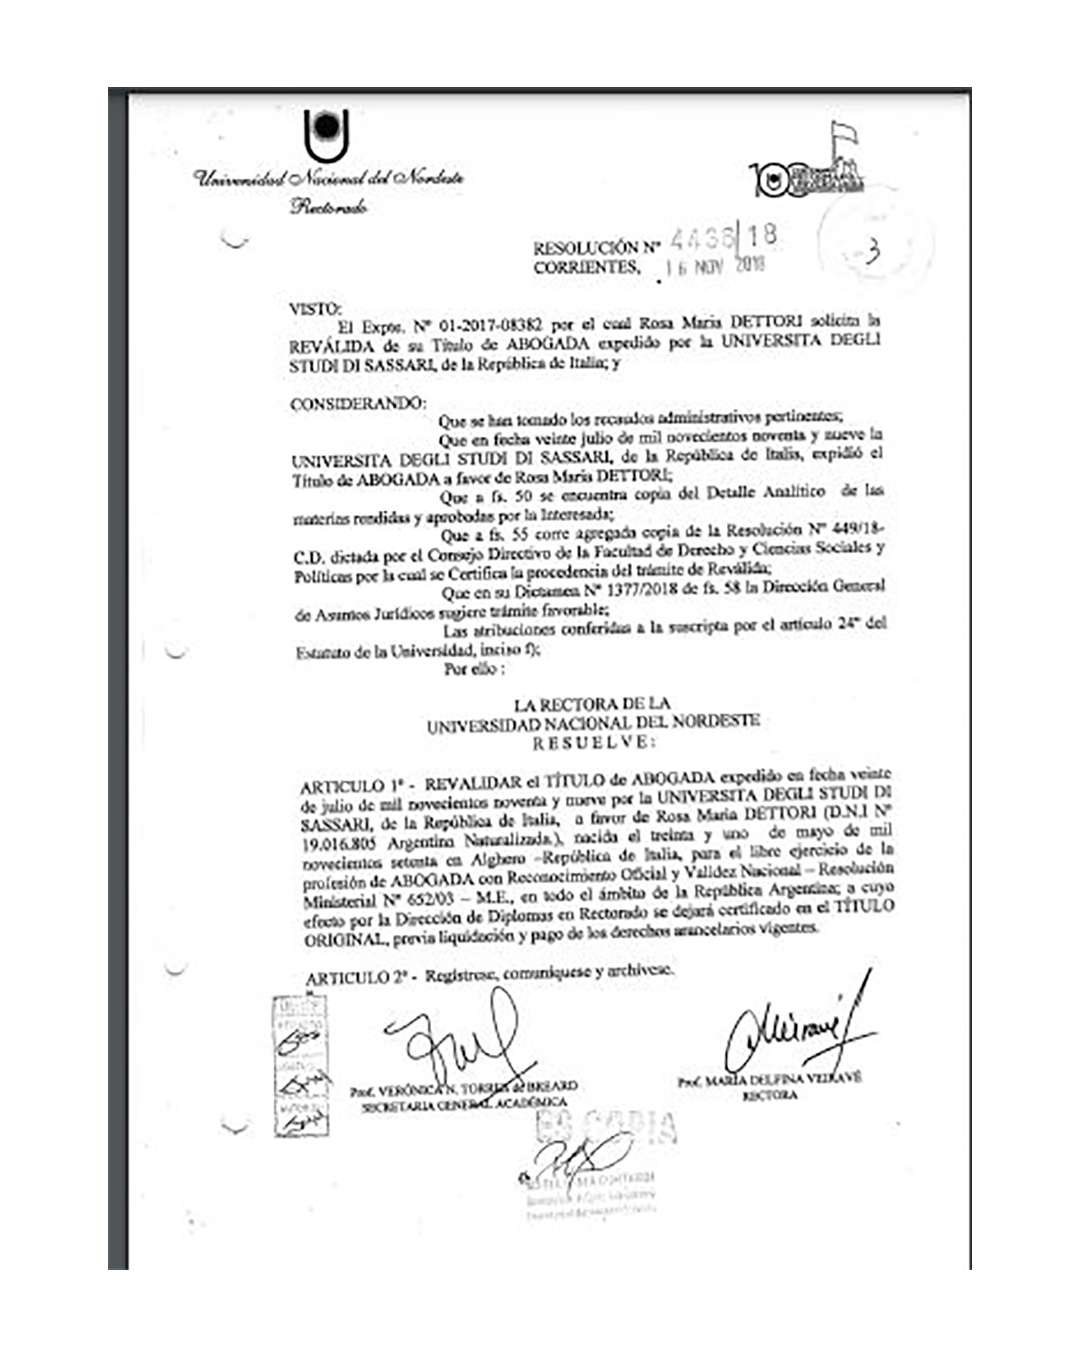 La resolución de la rectora de la Universidad Nacional del Nordeste por la cual se efectivizó la reválidad del título de Rosa Dettori